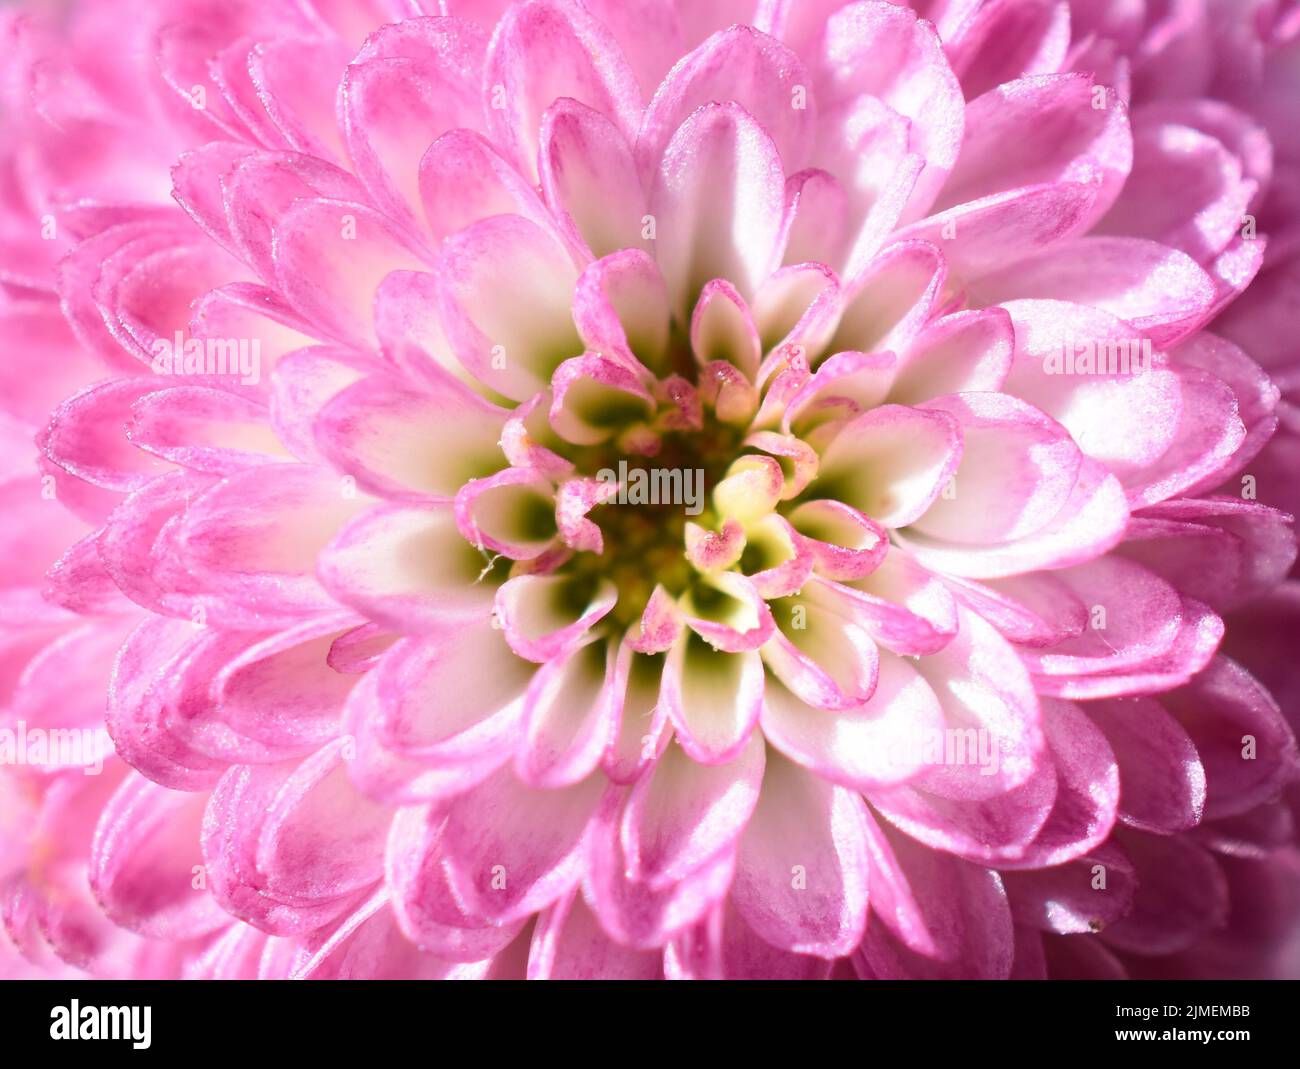 Gros plan extrême sur la fleur de chrysanthème rose Banque D'Images